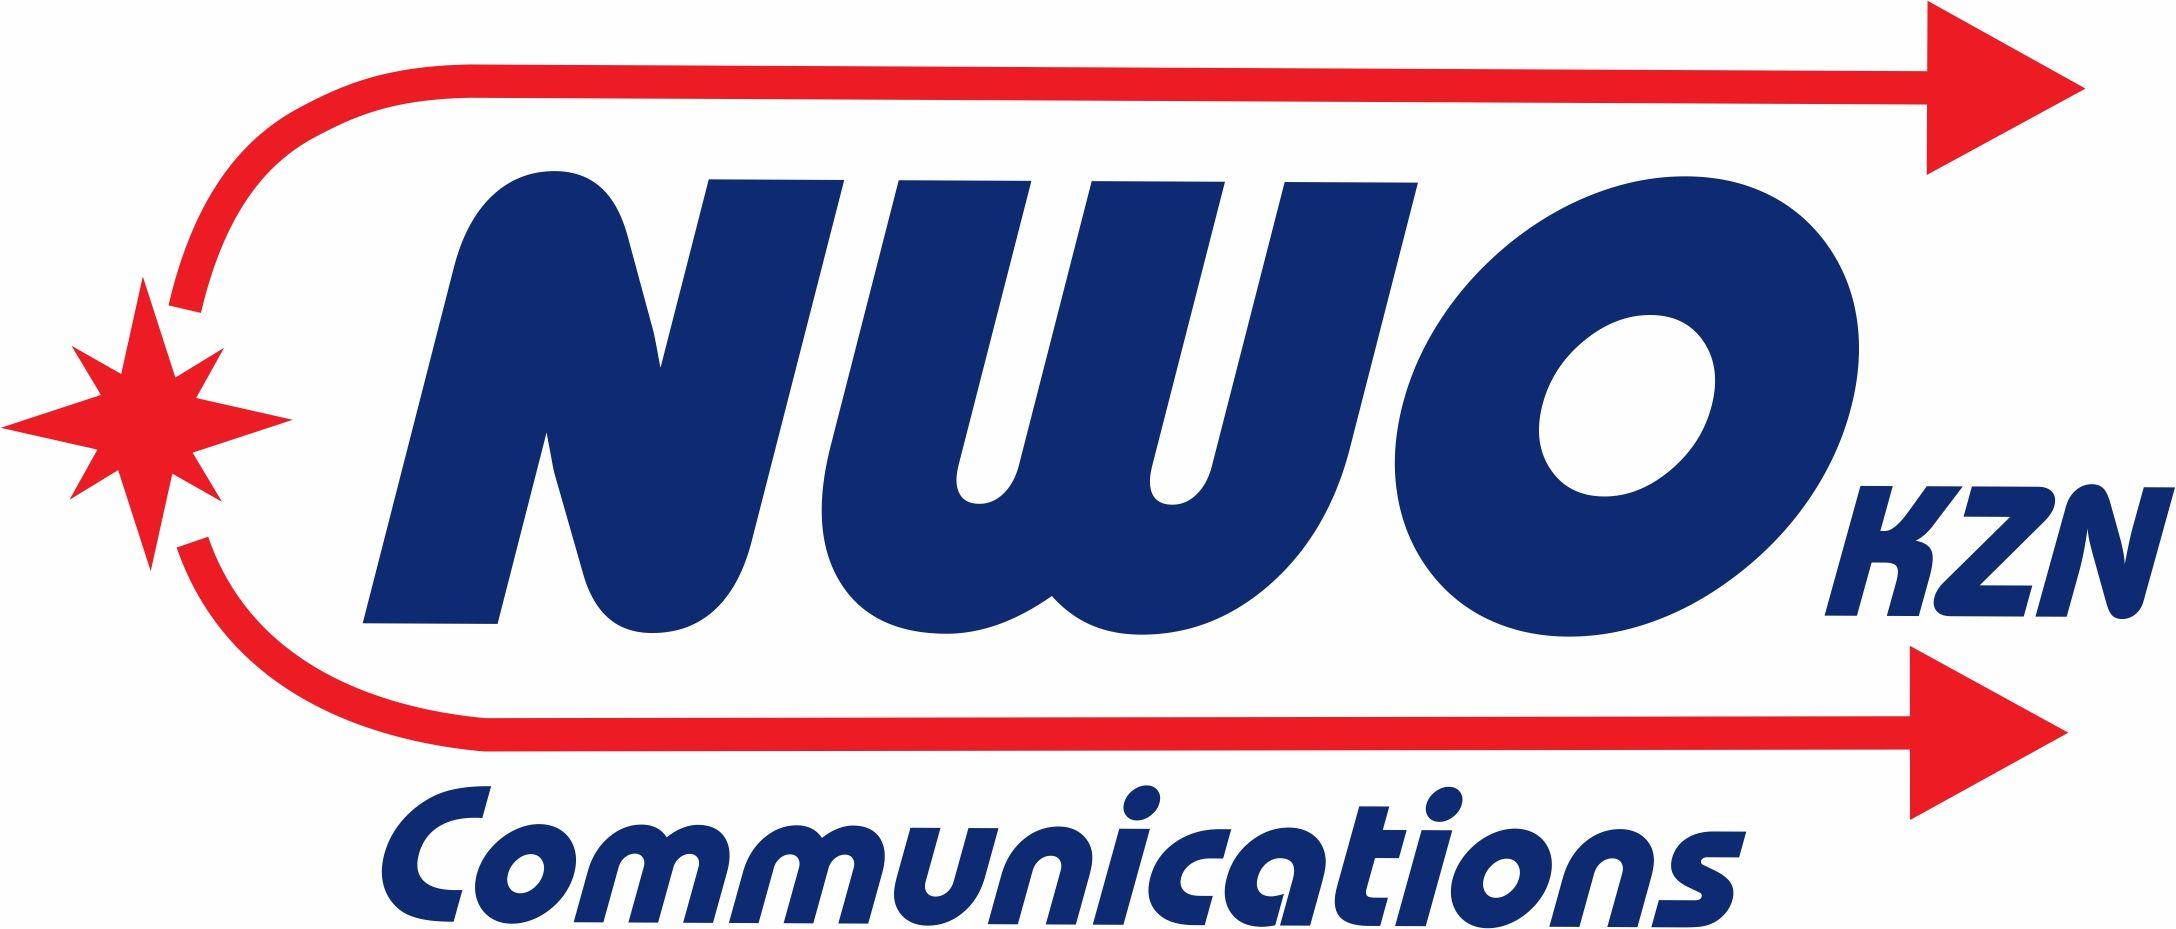 NWO Logo - NWO LOGO LARGE